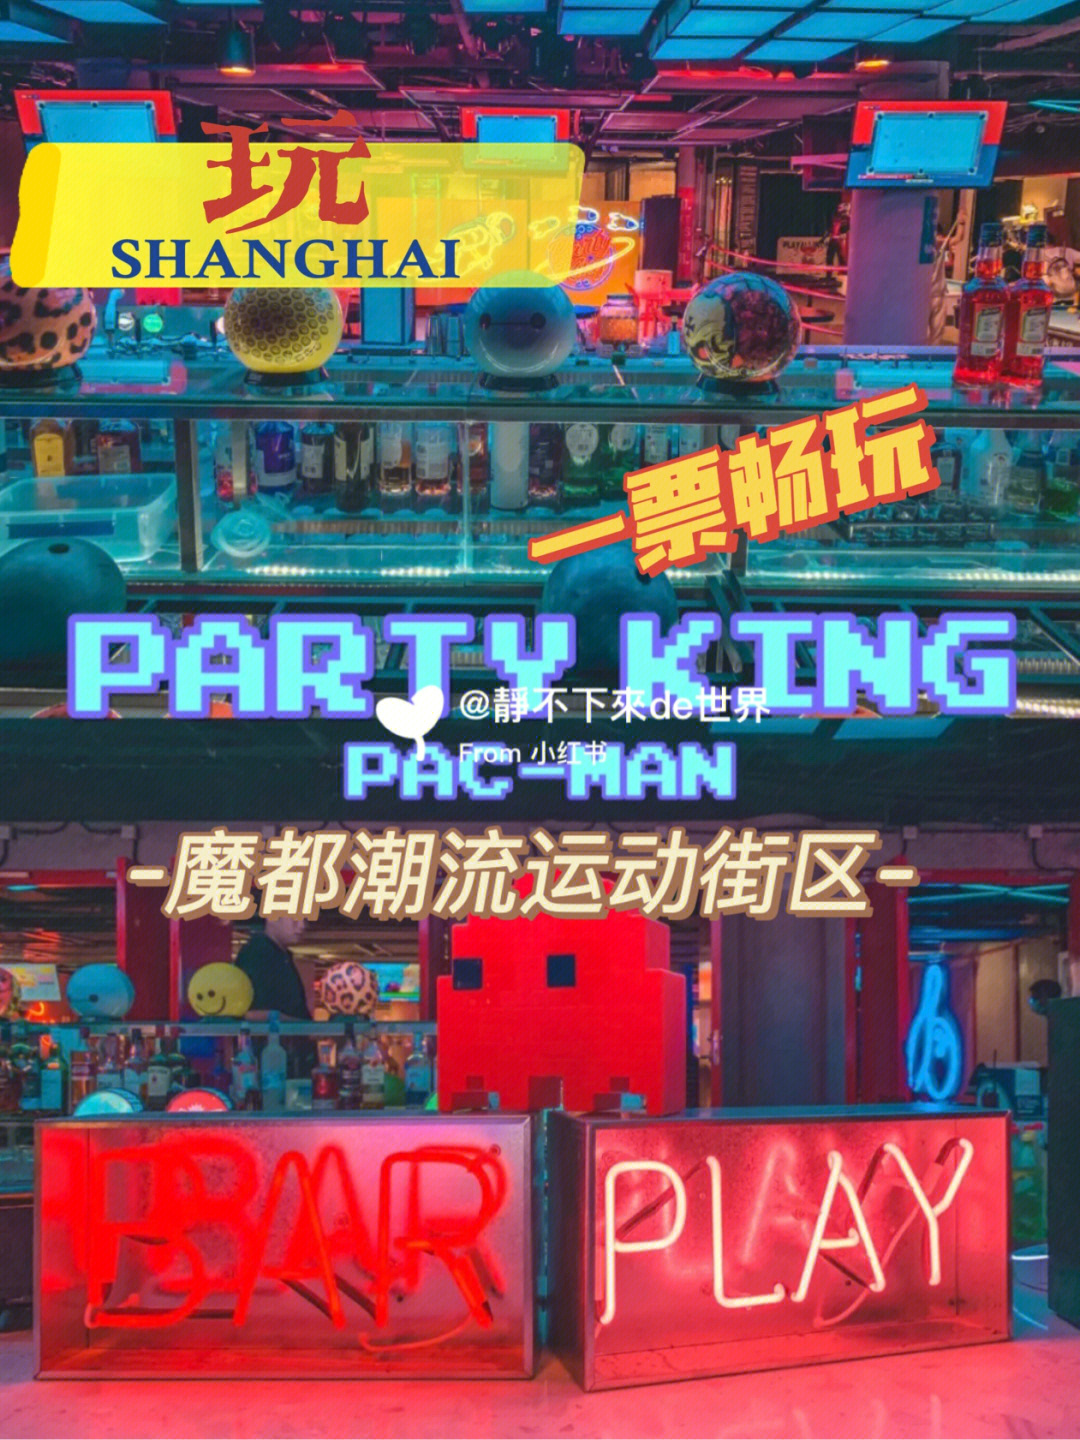 上海partyking悦汇会所图片